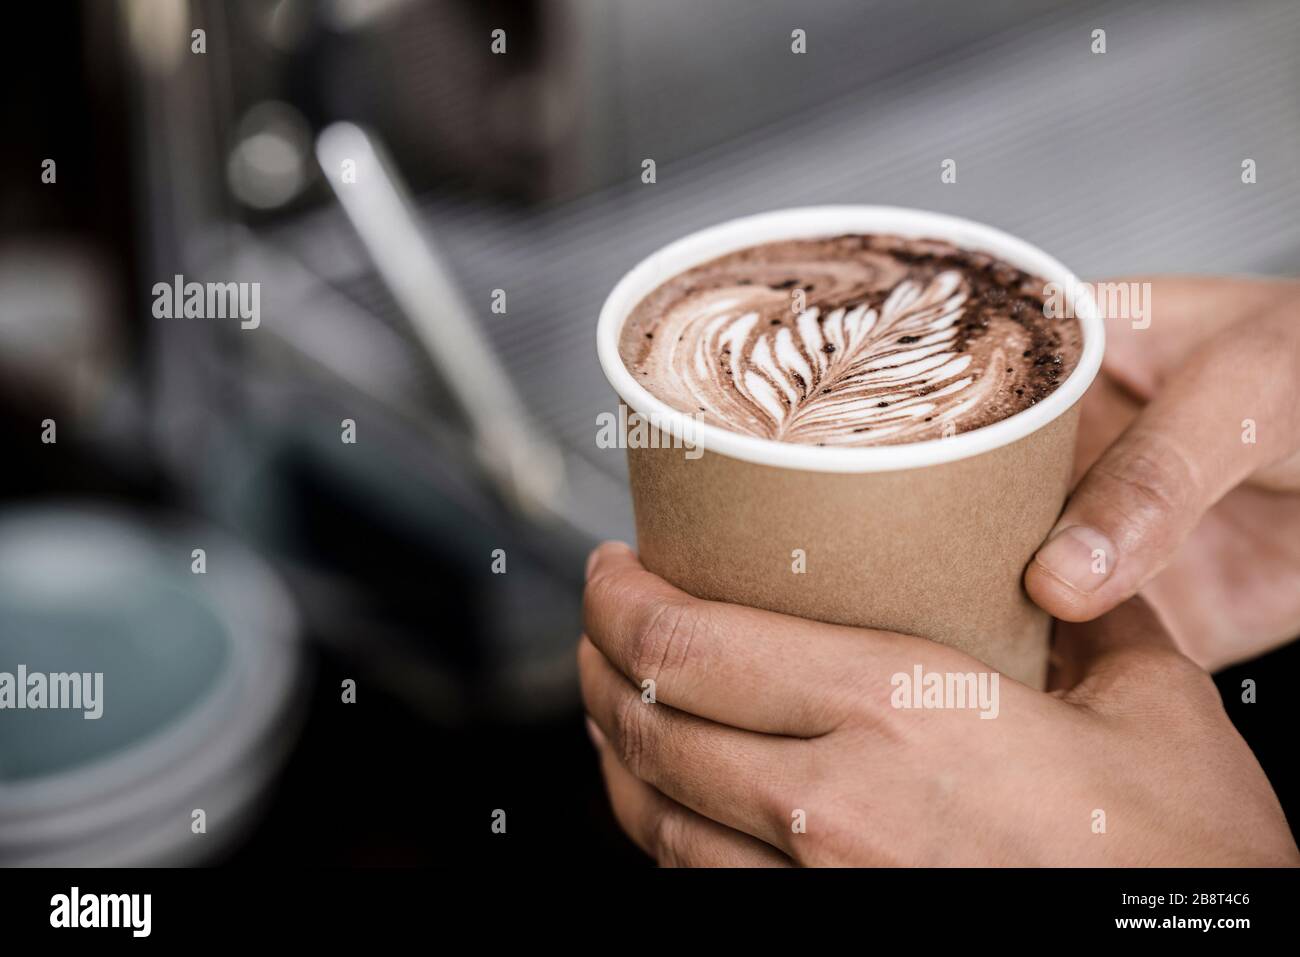 Primo piano di mani maschili con tazza take away di caffè caldo preparato con il design Fern latte art Foto Stock